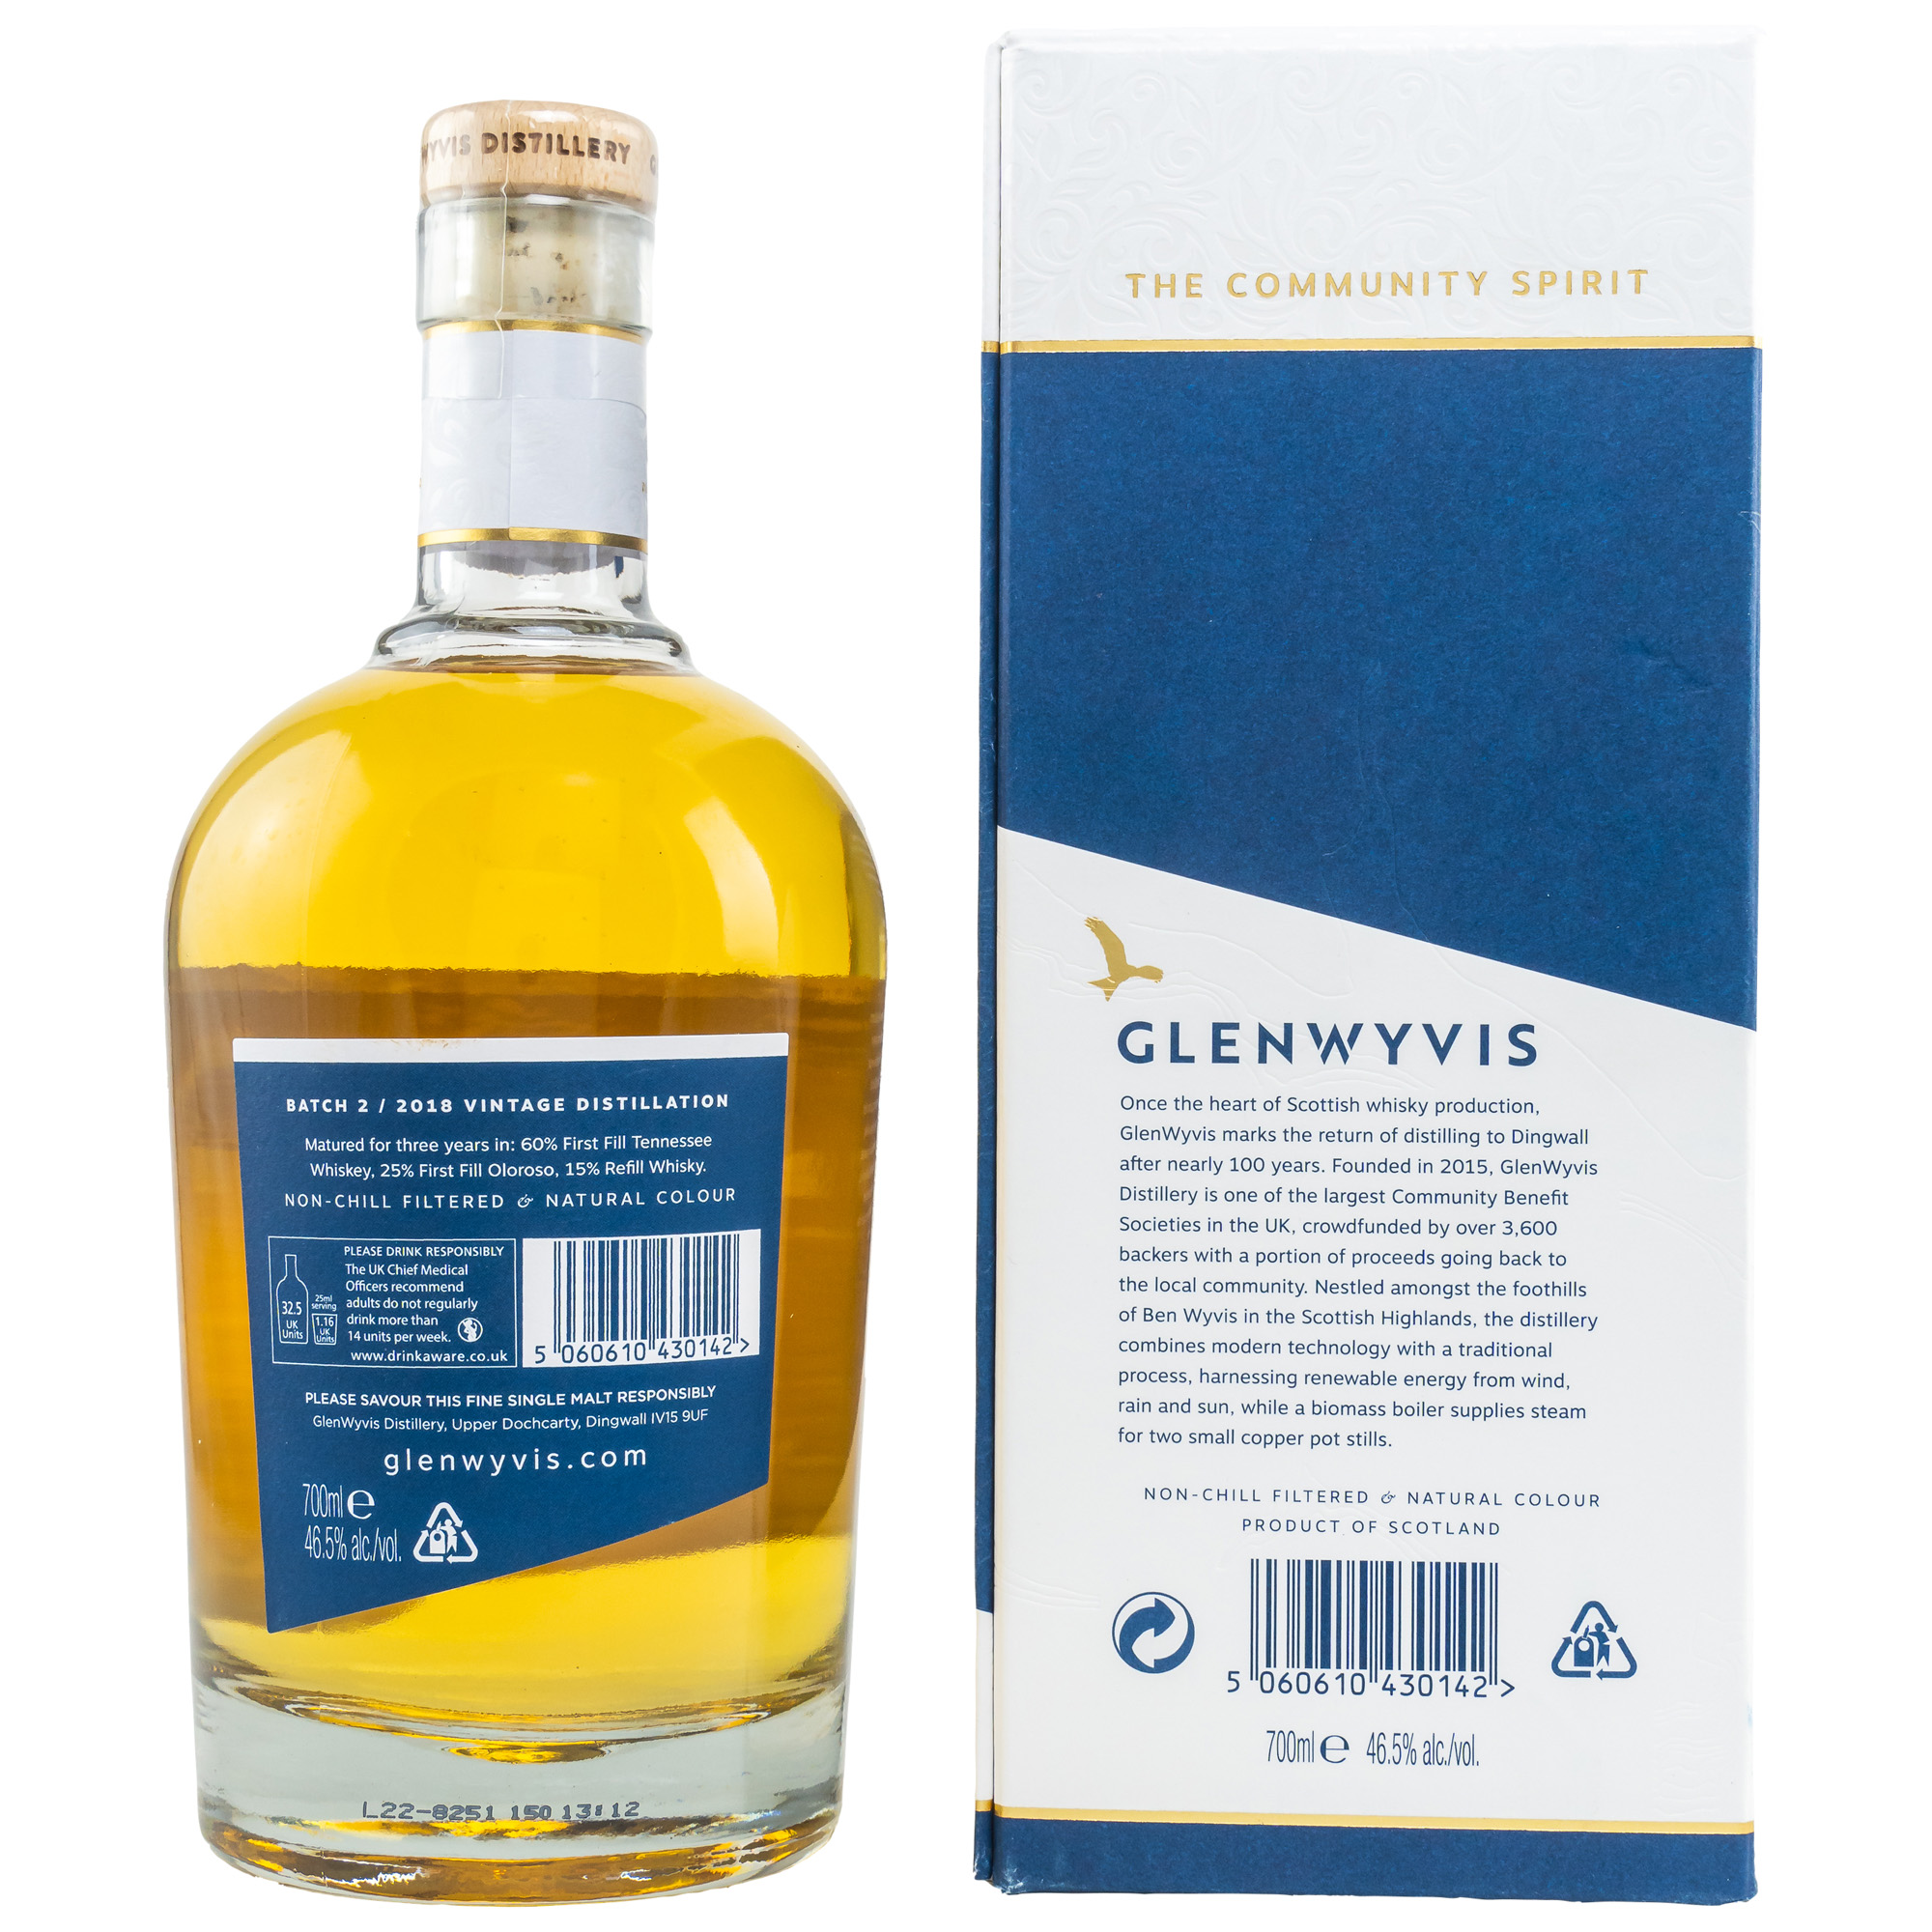 AlkFlasche Glenwyvis 2018 Vintage Whisky Rückseiteohol, Getränk, Schnaps